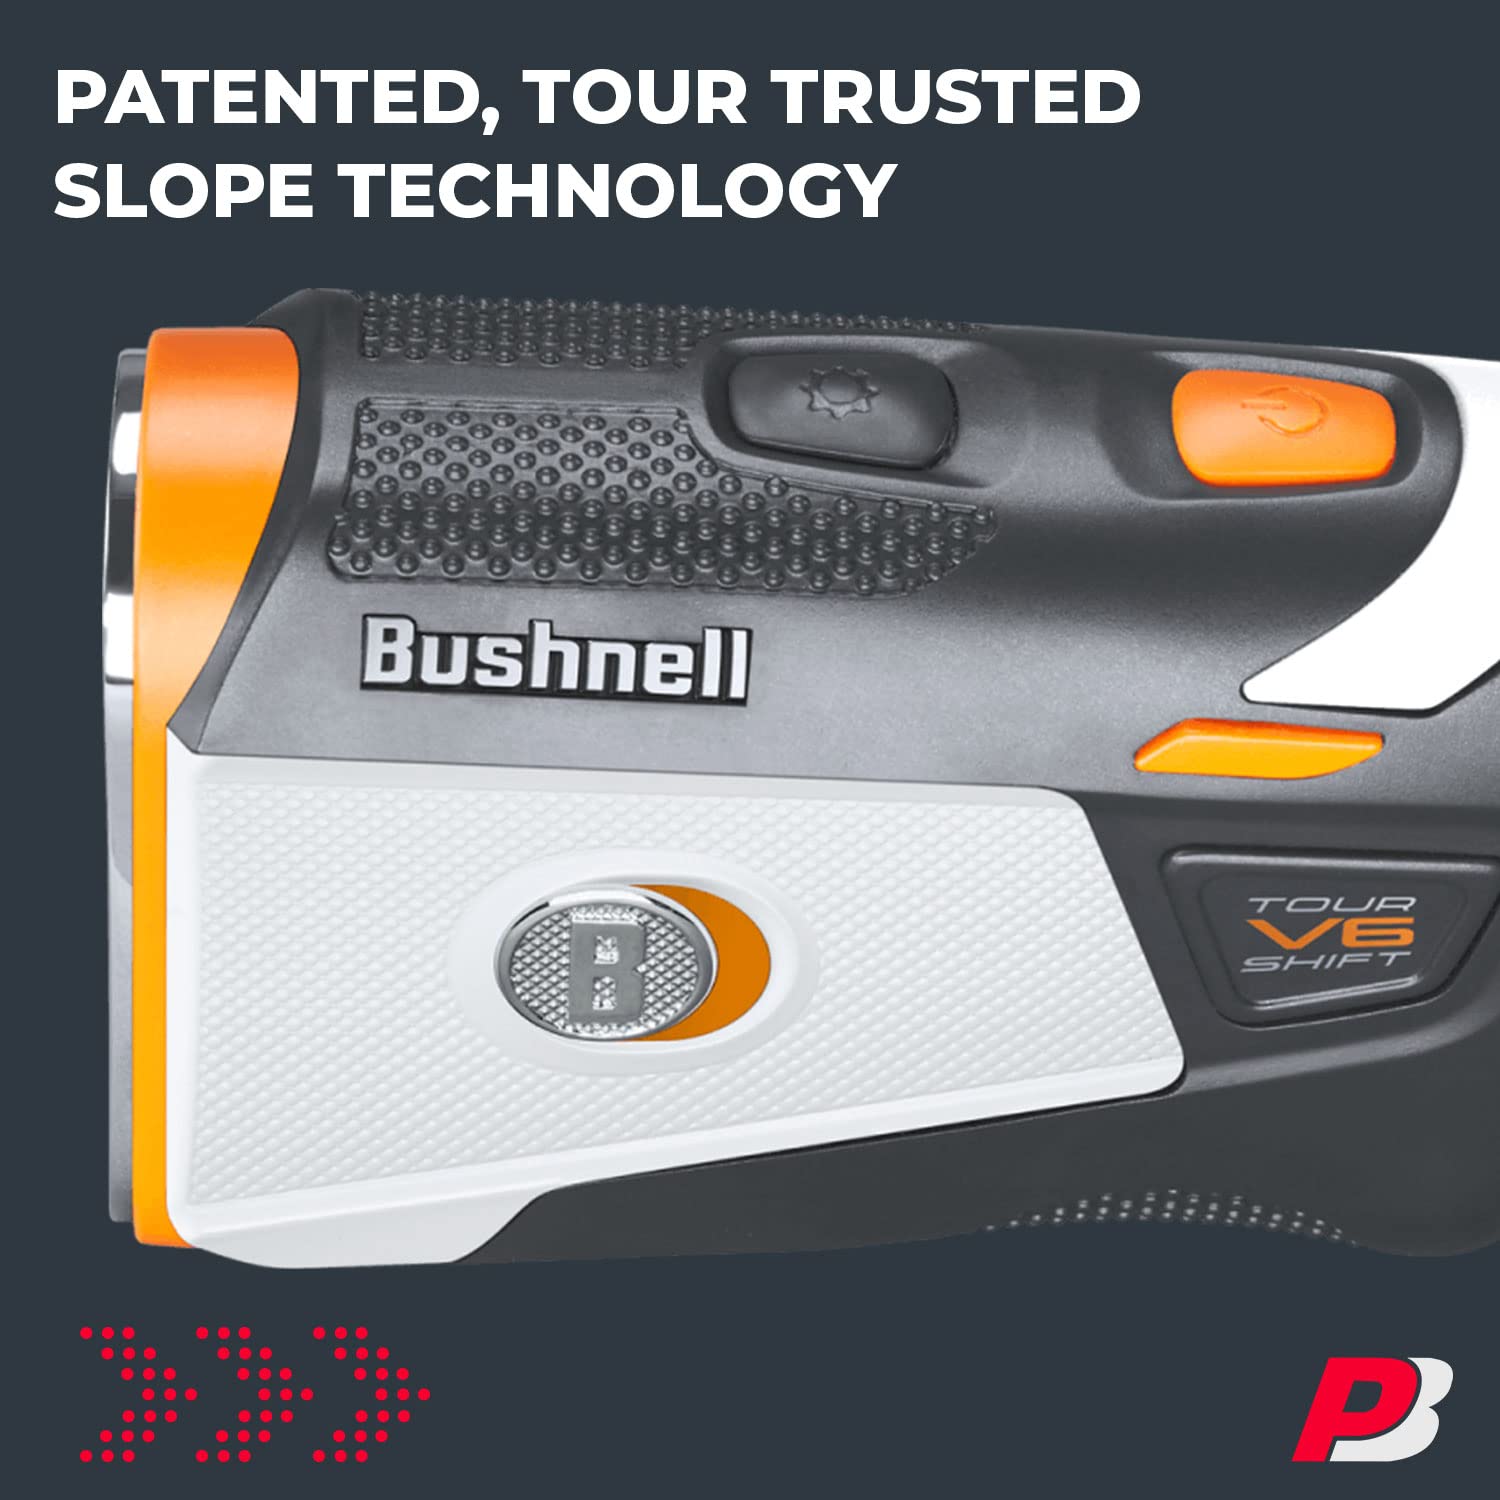 Bushnell Tour V6 / Tour V6 Shift Golf Rangefinder Bundle | PinSeeker with Visual JOLT, BITE Mount, & IPX6 Rating | with Bushnell Golf Carrying Case, Microfiber Towel, 2 CR2 Batteries, & More